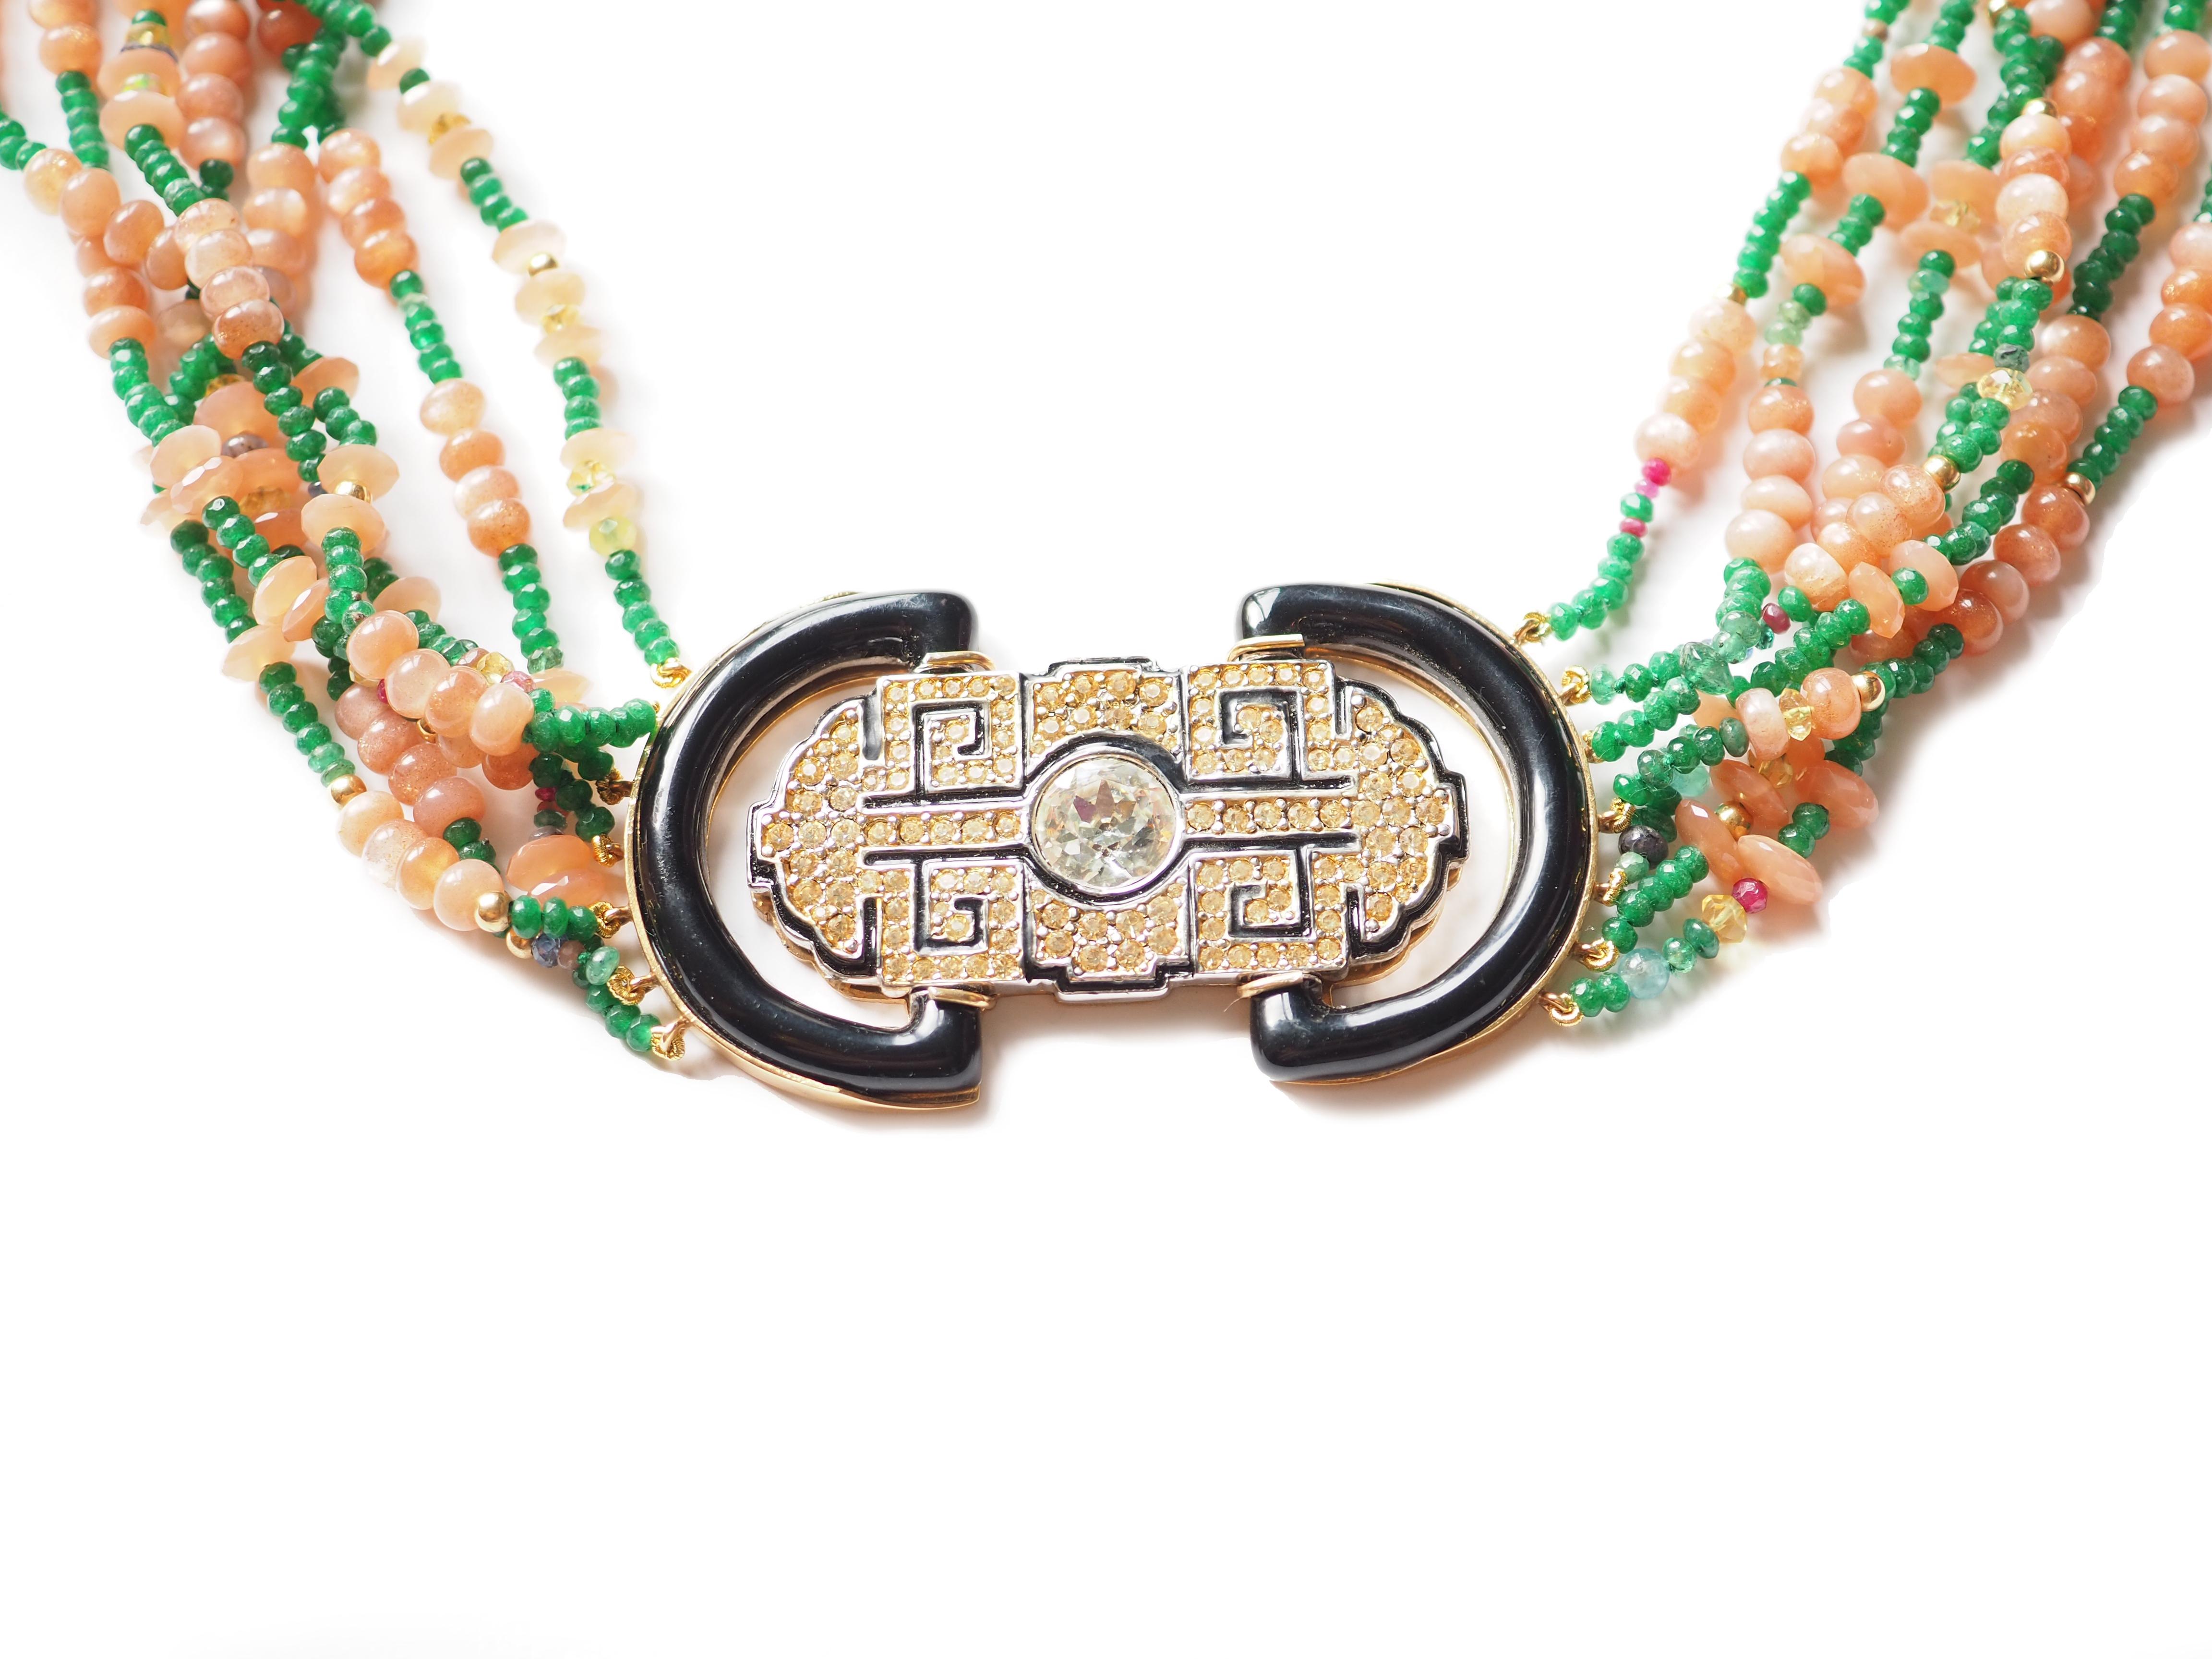 Collier long Opal Emerald Antique Decò Broches avec émail et zircon. Longueur d'environ 65 cm.
Tous les bijoux Giulia Colussi sont neufs et n'ont jamais été portés ou possédés auparavant. Chaque article arrivera à votre porte joliment emballé dans